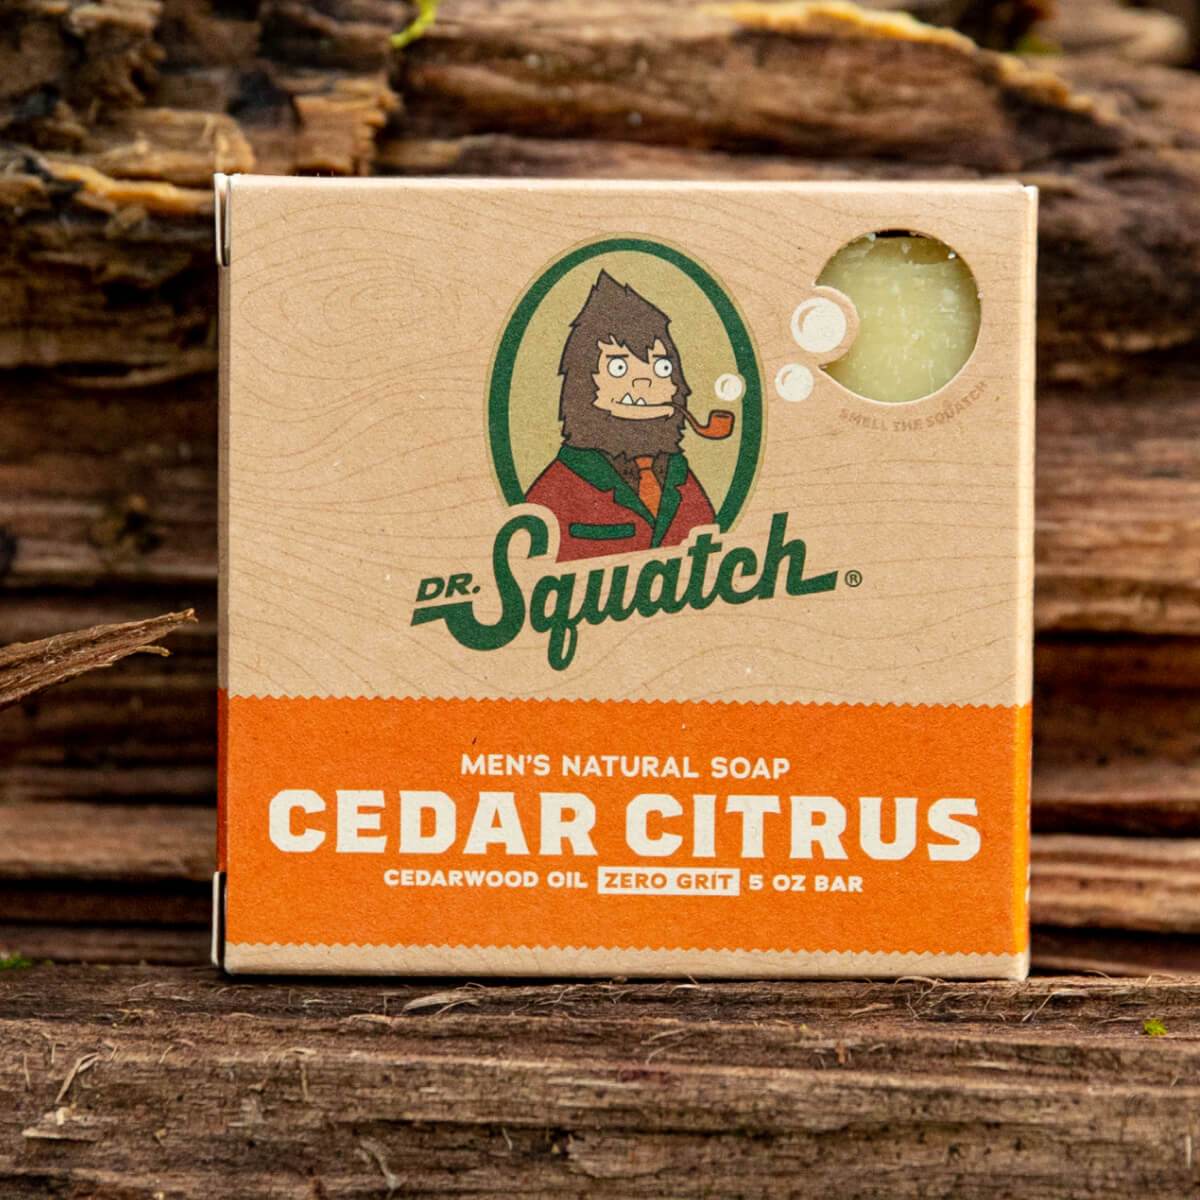 Cedar Citrus Bar Soap